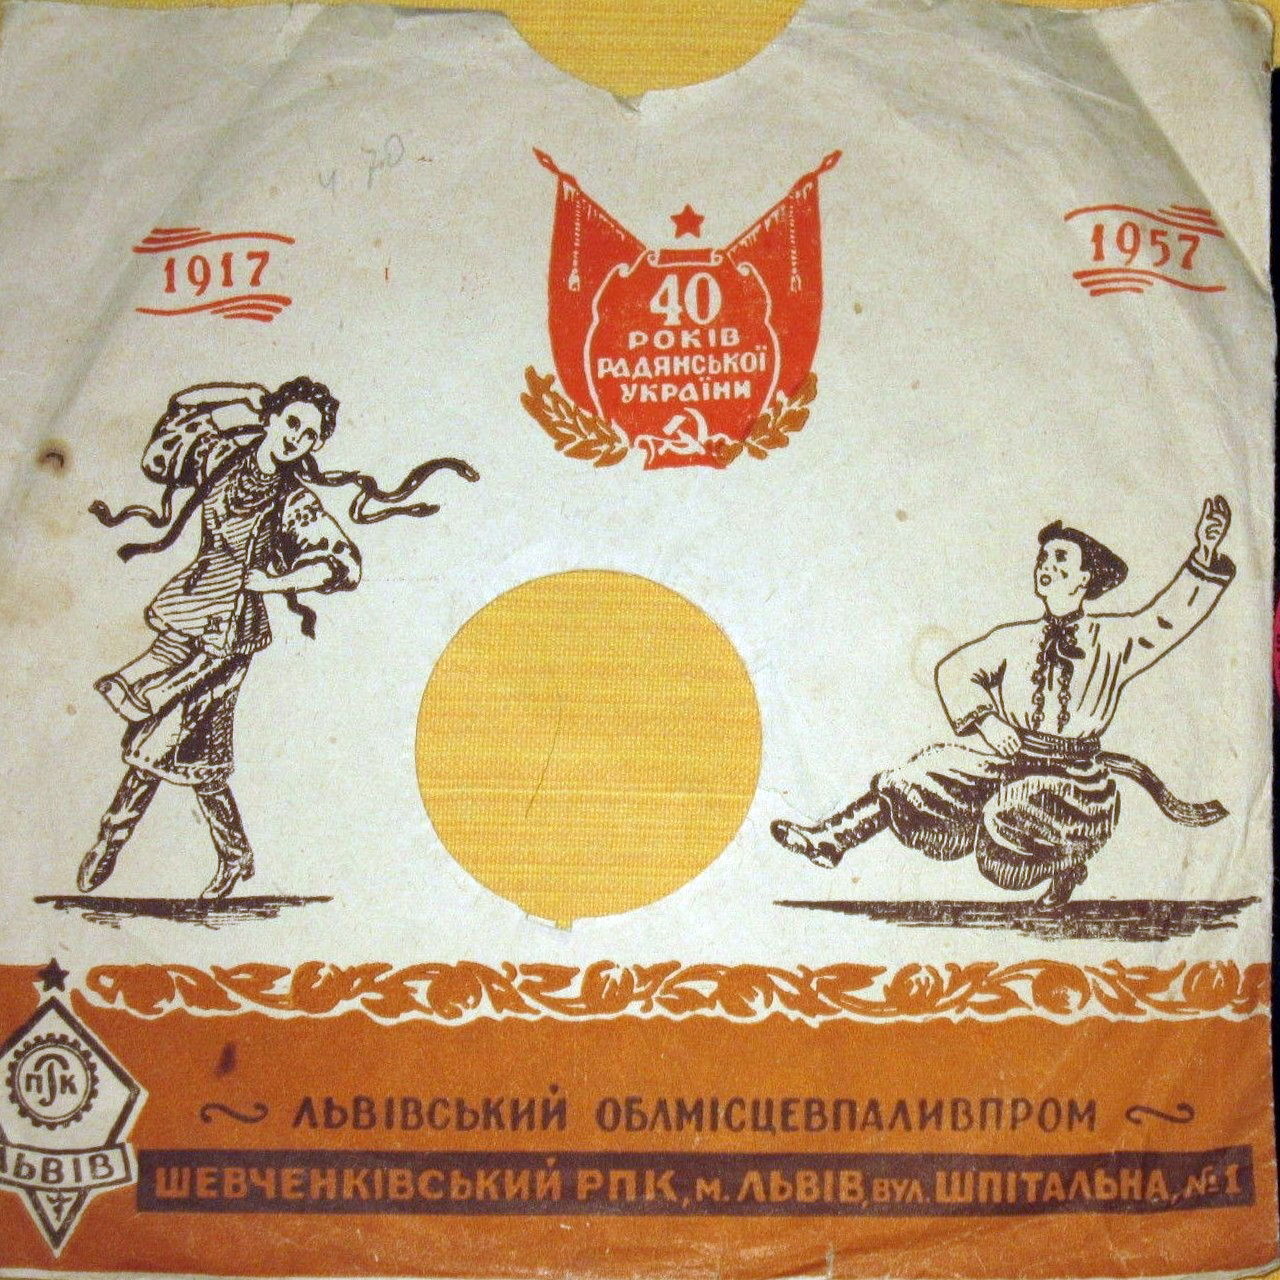 1917-1957. 40 лет Советской Украине